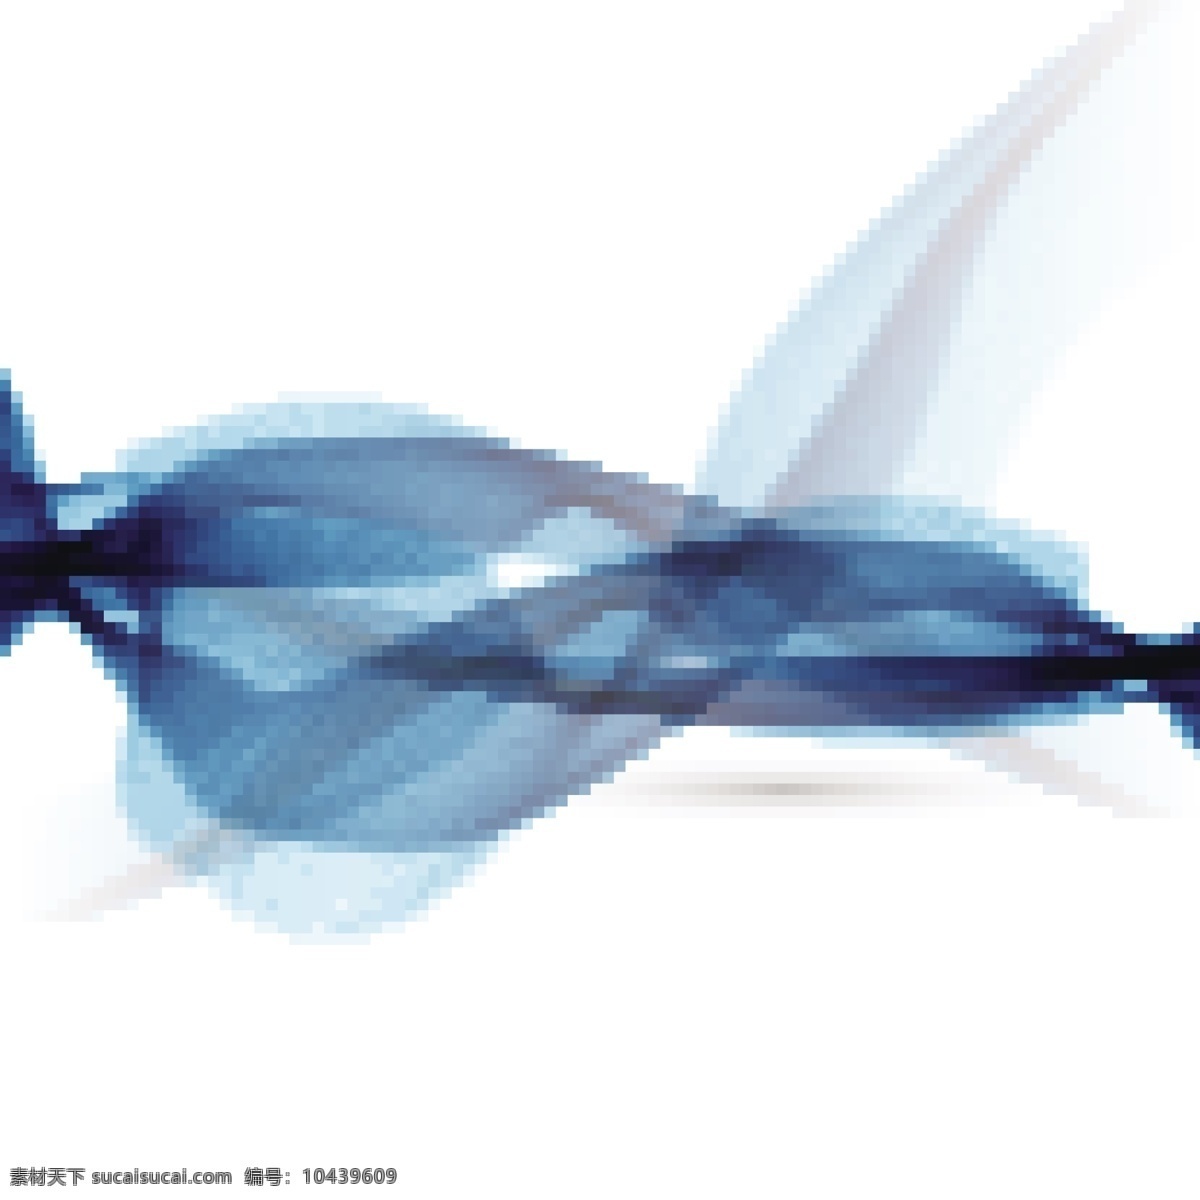 蓝色 现代 背景 抽象 模板 线条 波浪 墙纸 烟雾 装饰 运动 光泽 光滑 混合 流动 波浪形